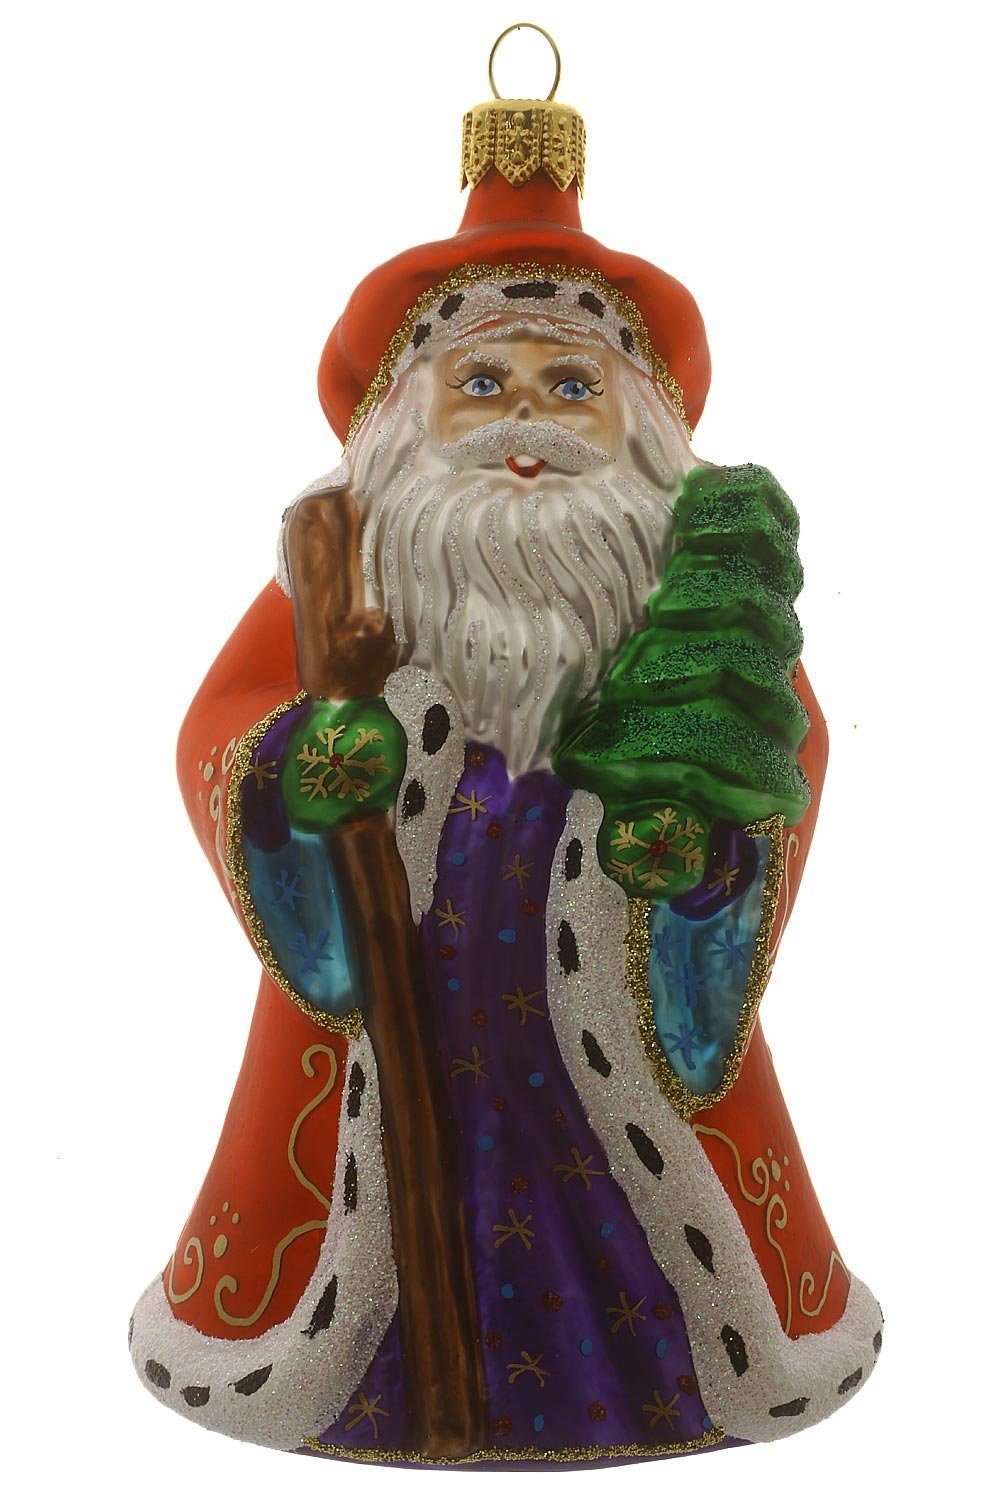 mitTannenbaum, handdekoriert Weihnachtskontor mundgeblasen - Christbaumschmuck Weihnachtsmann Hamburger - Dekohänger